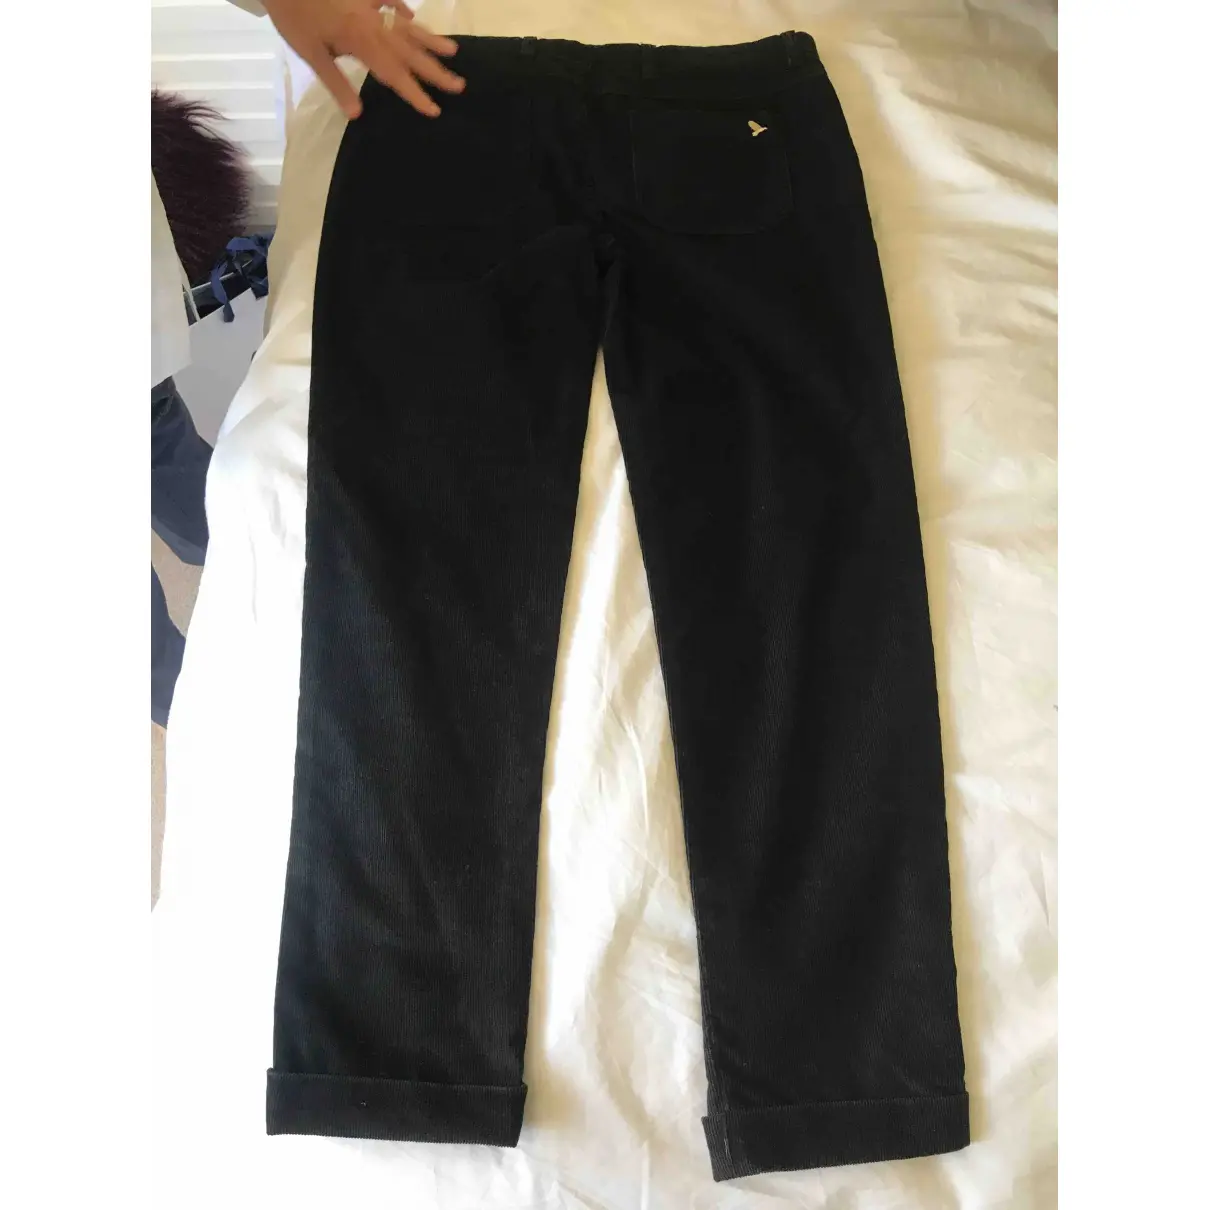 Buy Mih Jeans Slim pants online